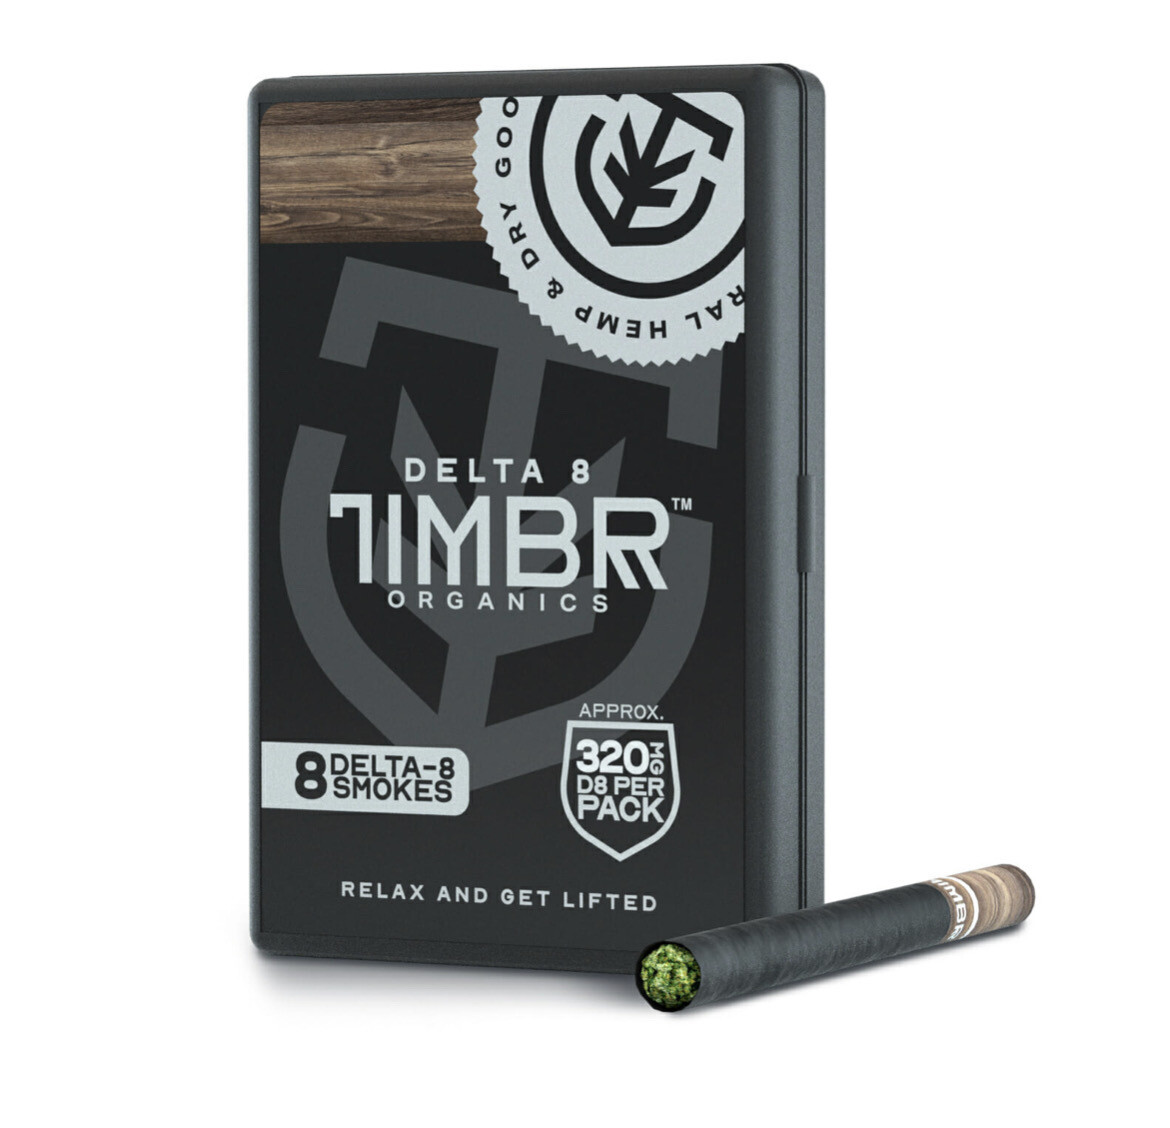 Timbr Delta 8 Smokes